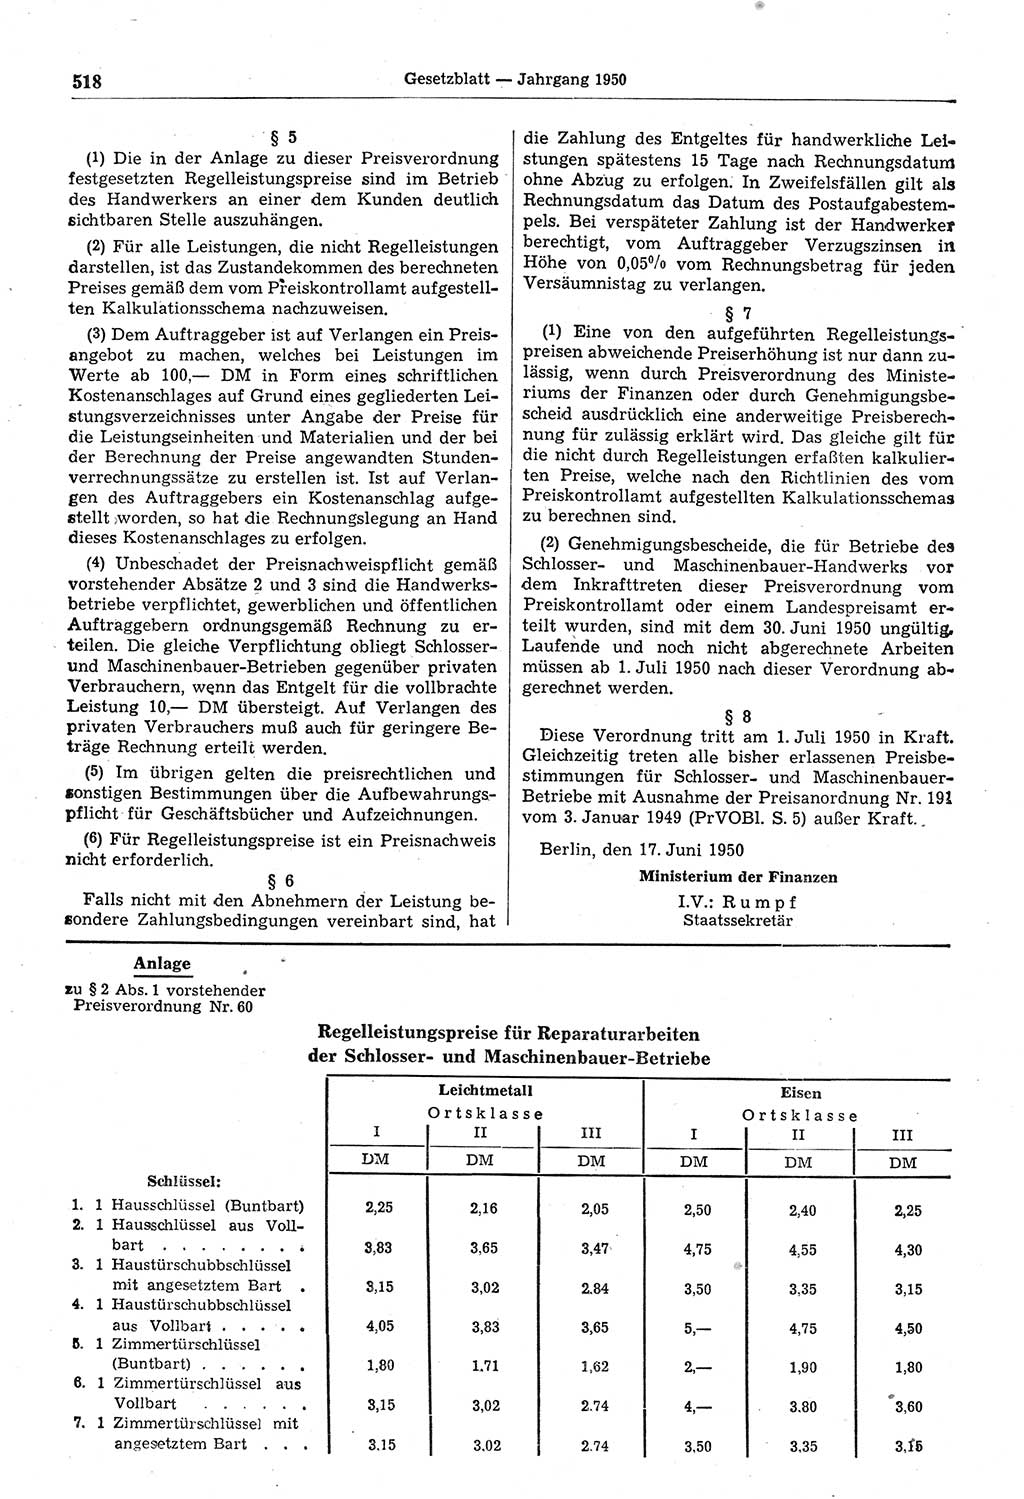 Gesetzblatt (GBl.) der Deutschen Demokratischen Republik (DDR) 1950, Seite 518 (GBl. DDR 1950, S. 518)